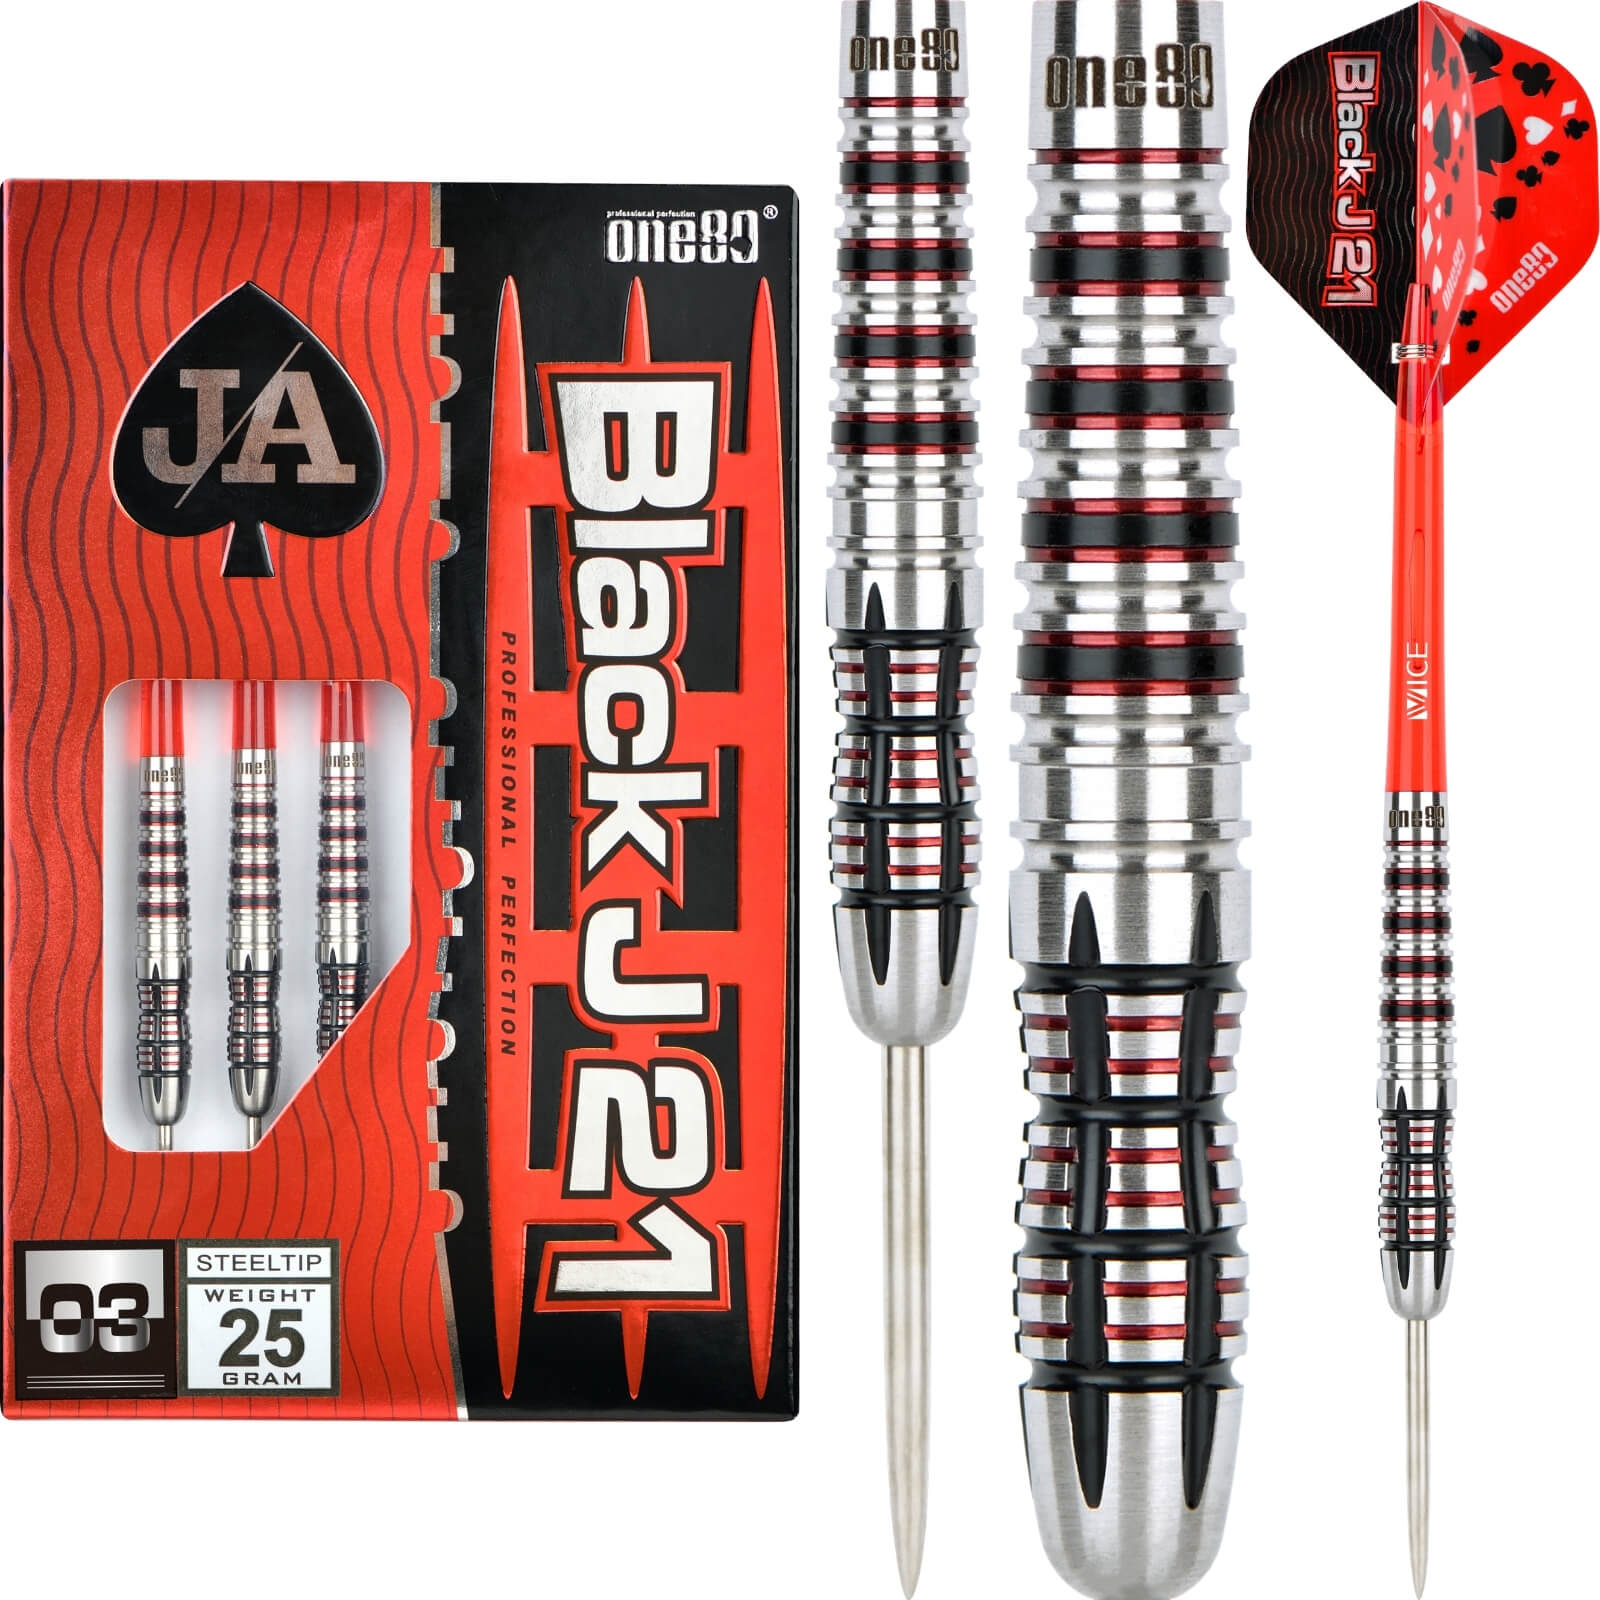 Darts - One80 - Black J21 03 Darts - Steel Tip - 90% Tungsten - 21g 23g 25g 